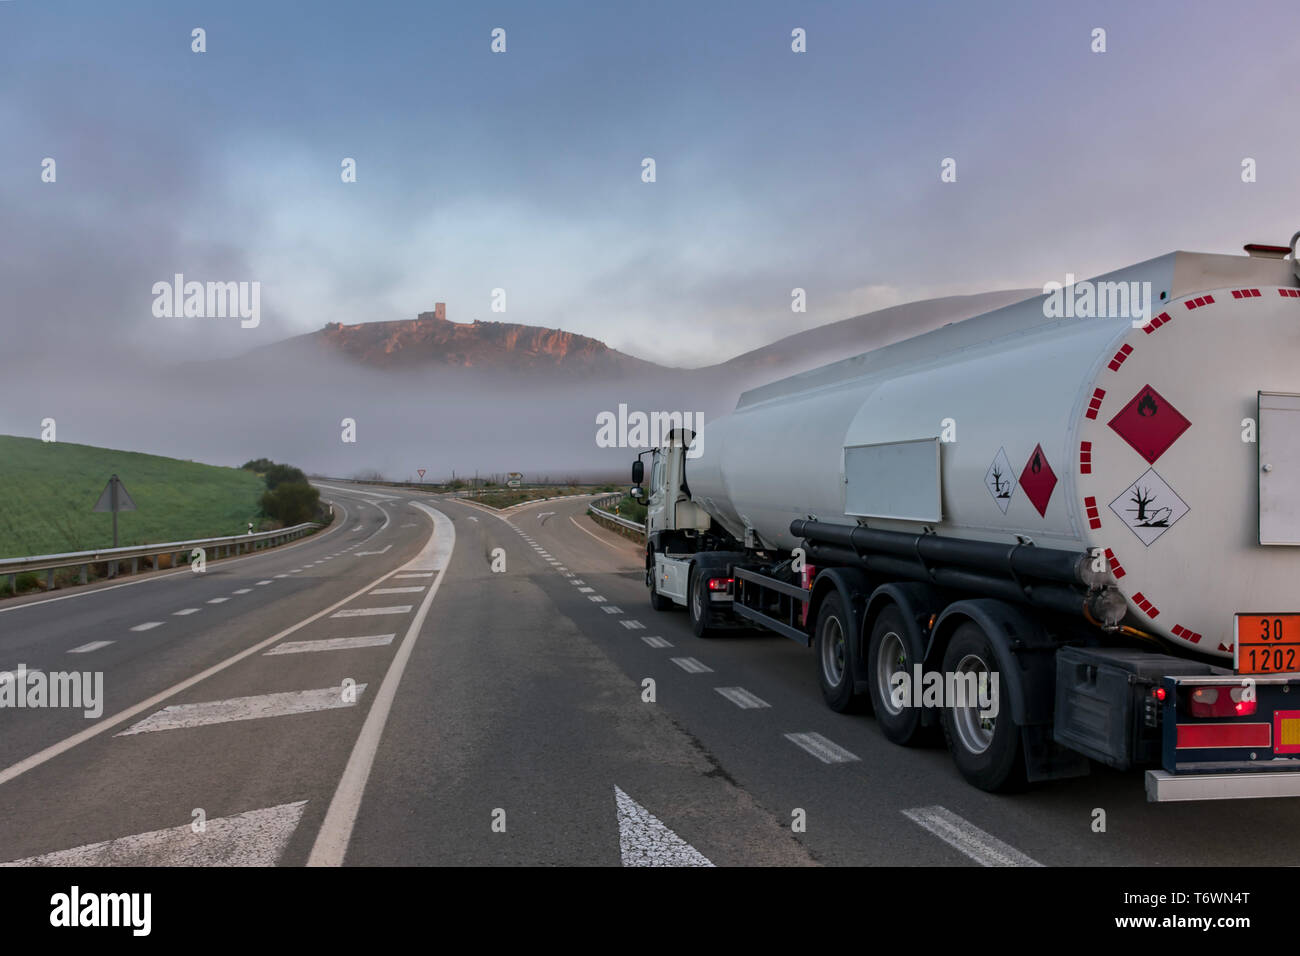 Tanker truck of dangerous goods on the road Stock Photo